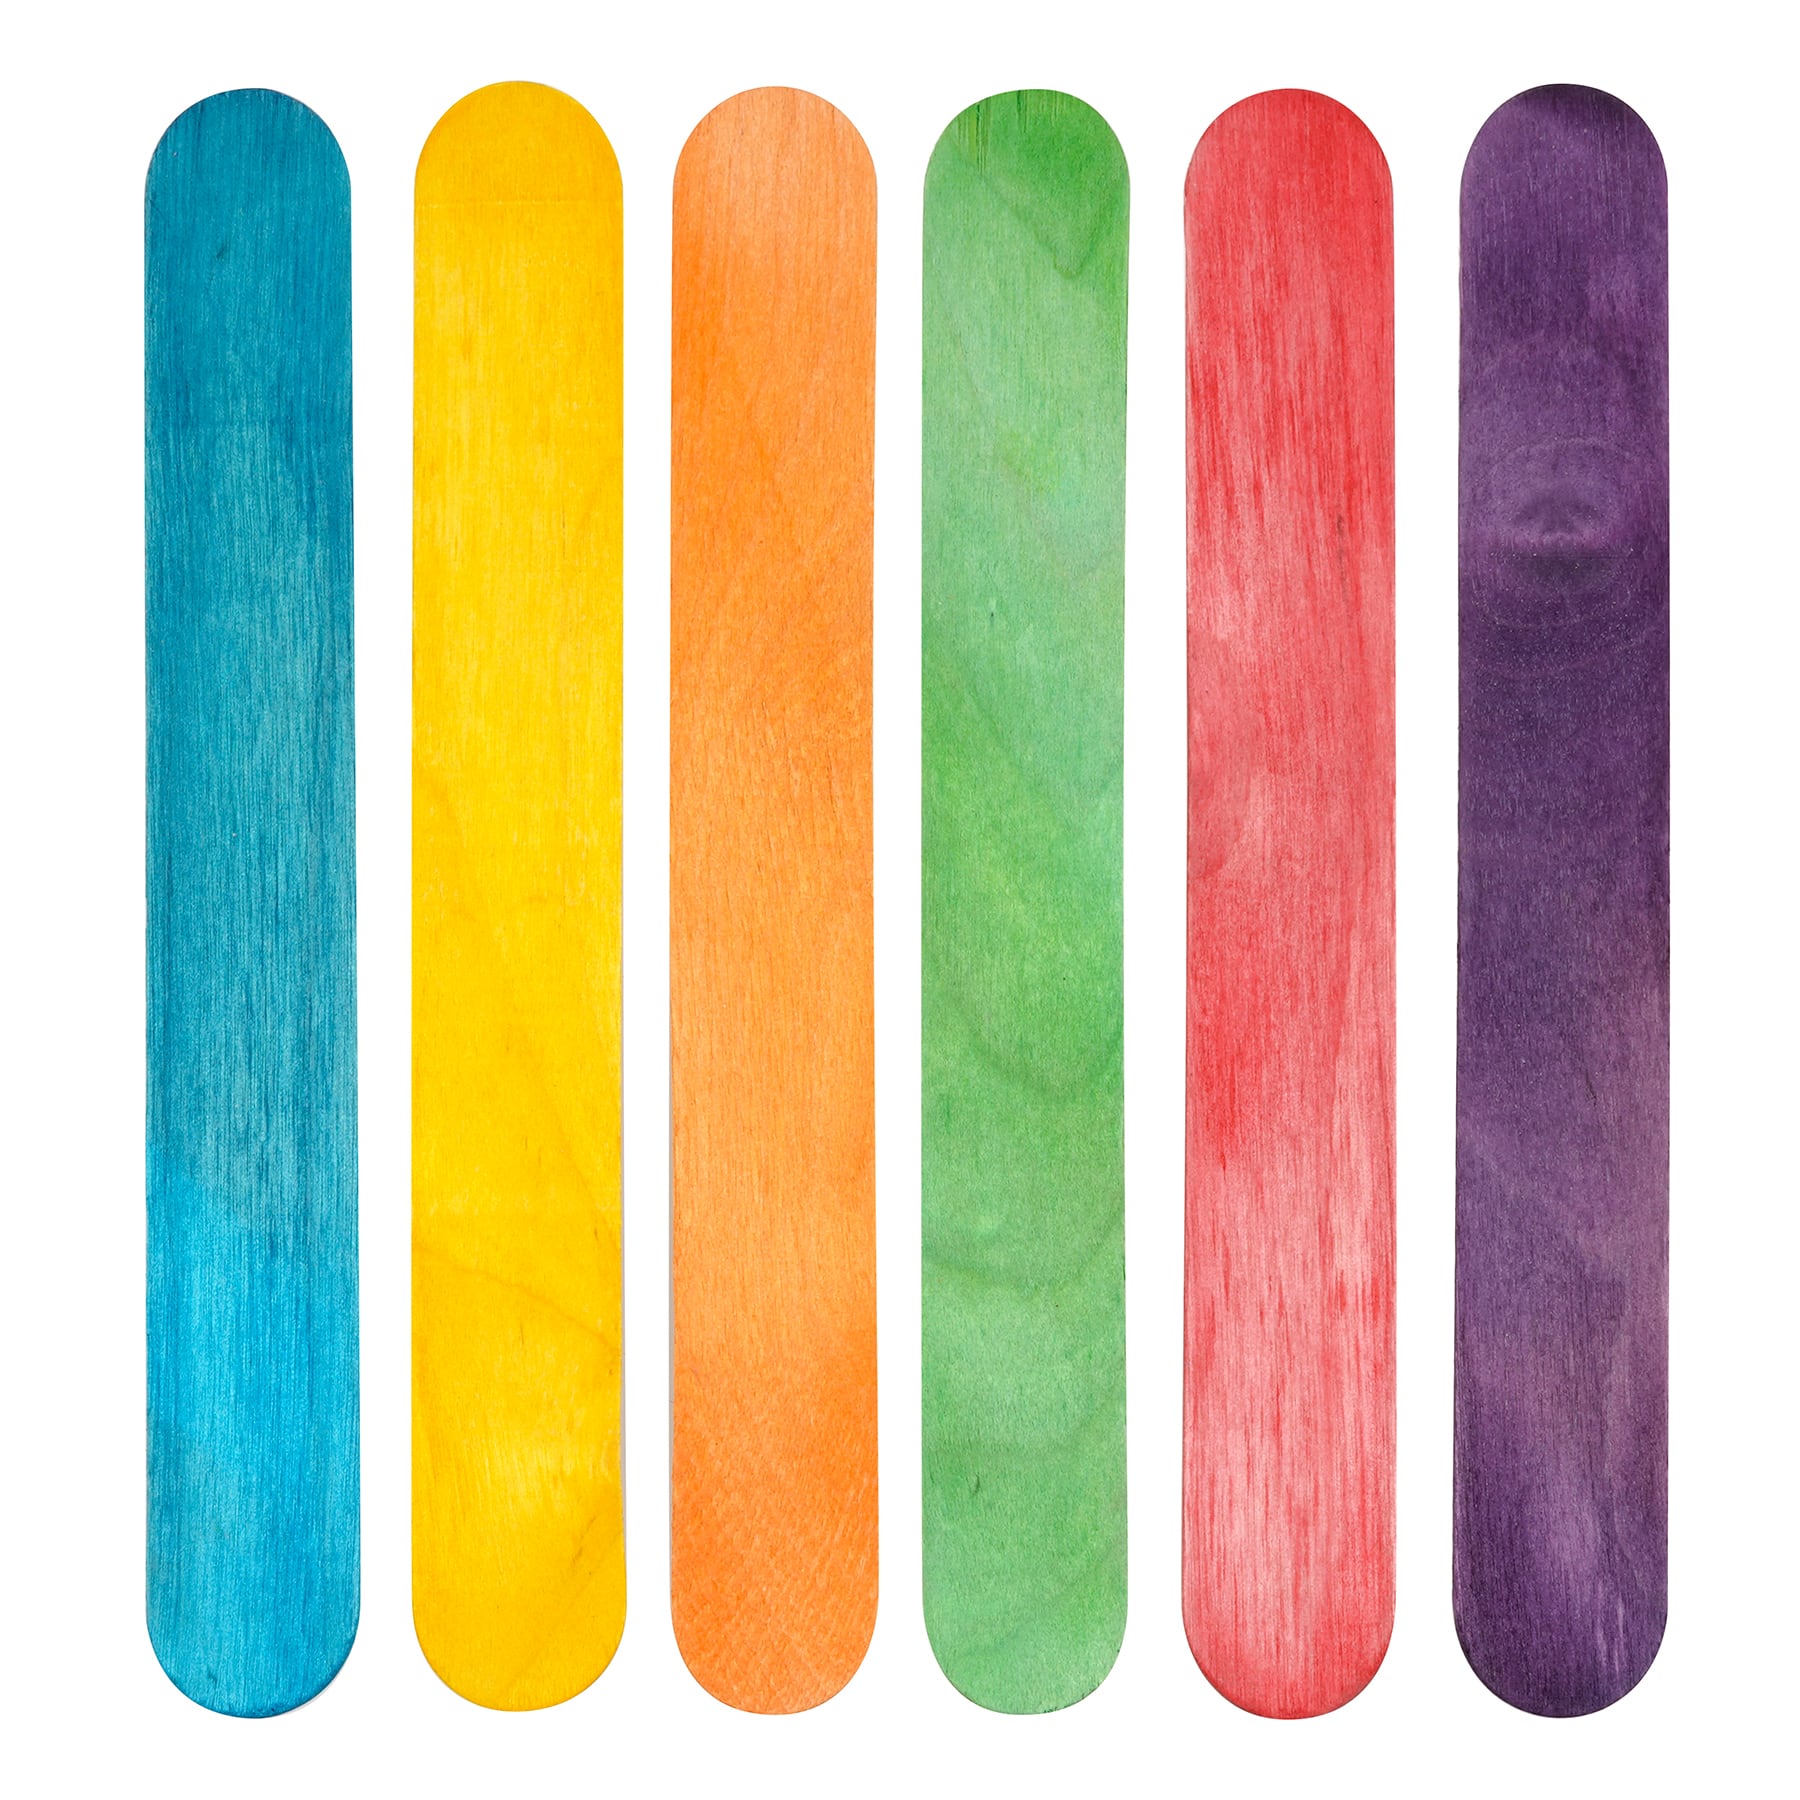 Colorful Jumbo Craft Sticks by Creatology™, 30ct.